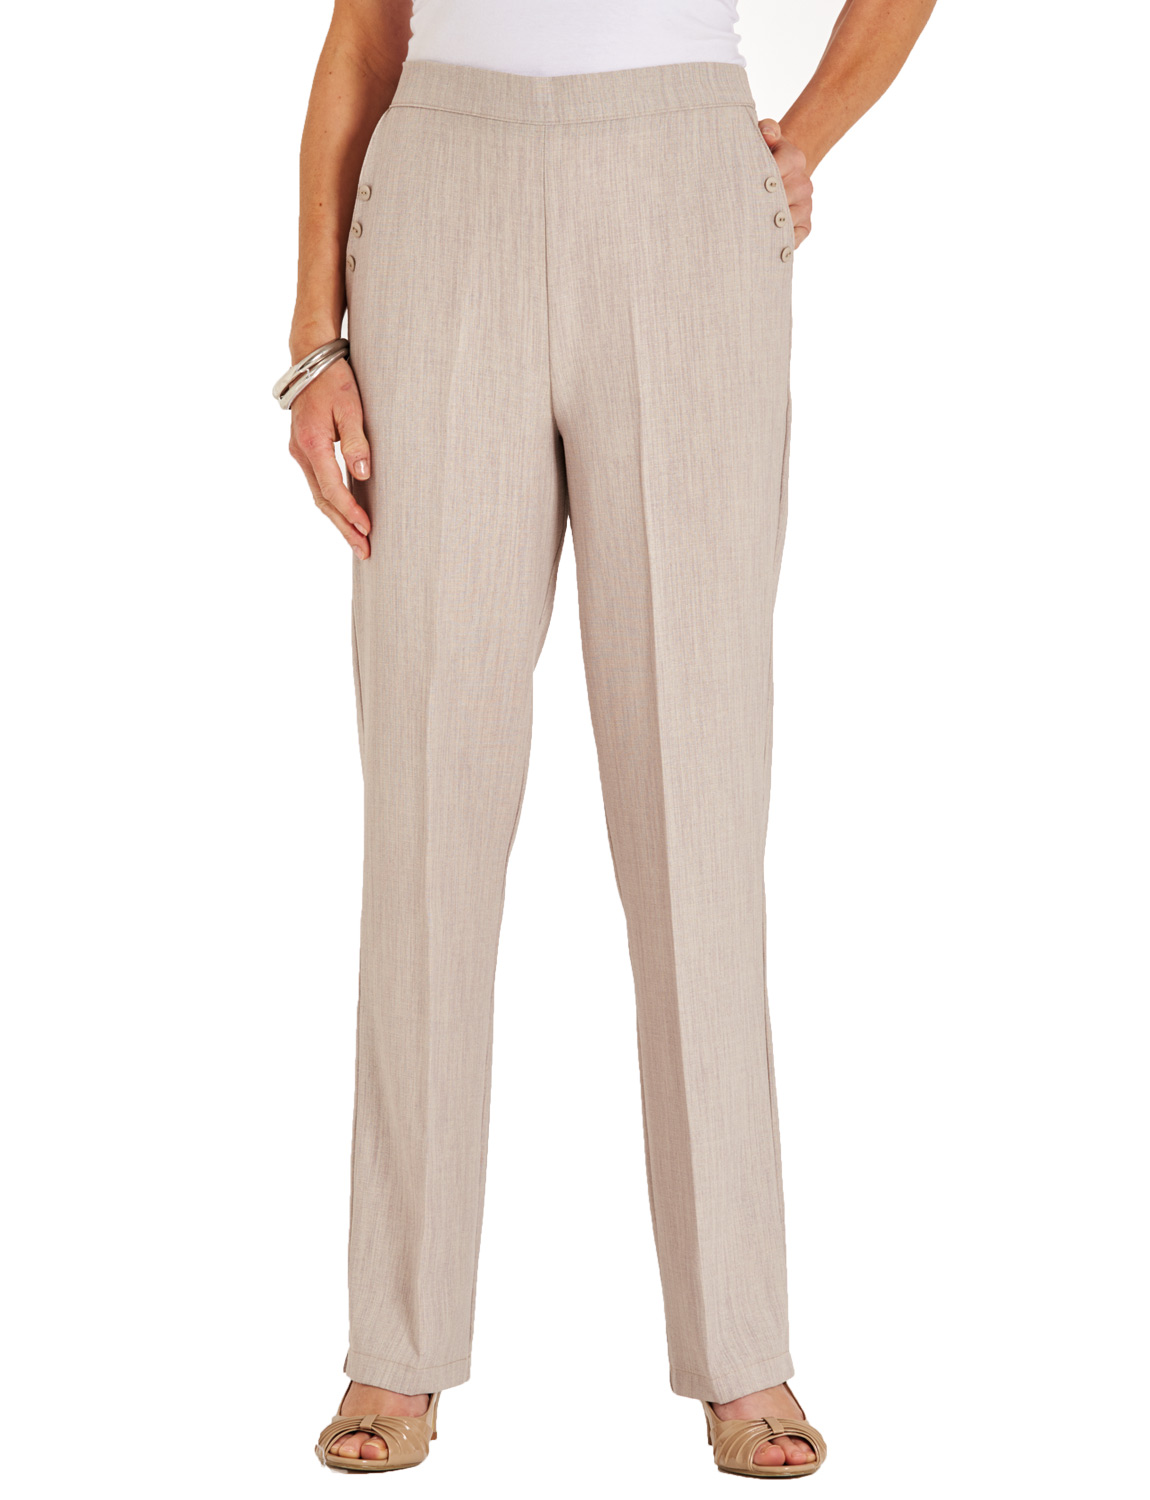 Ladies Linen Look Trouser | eBay